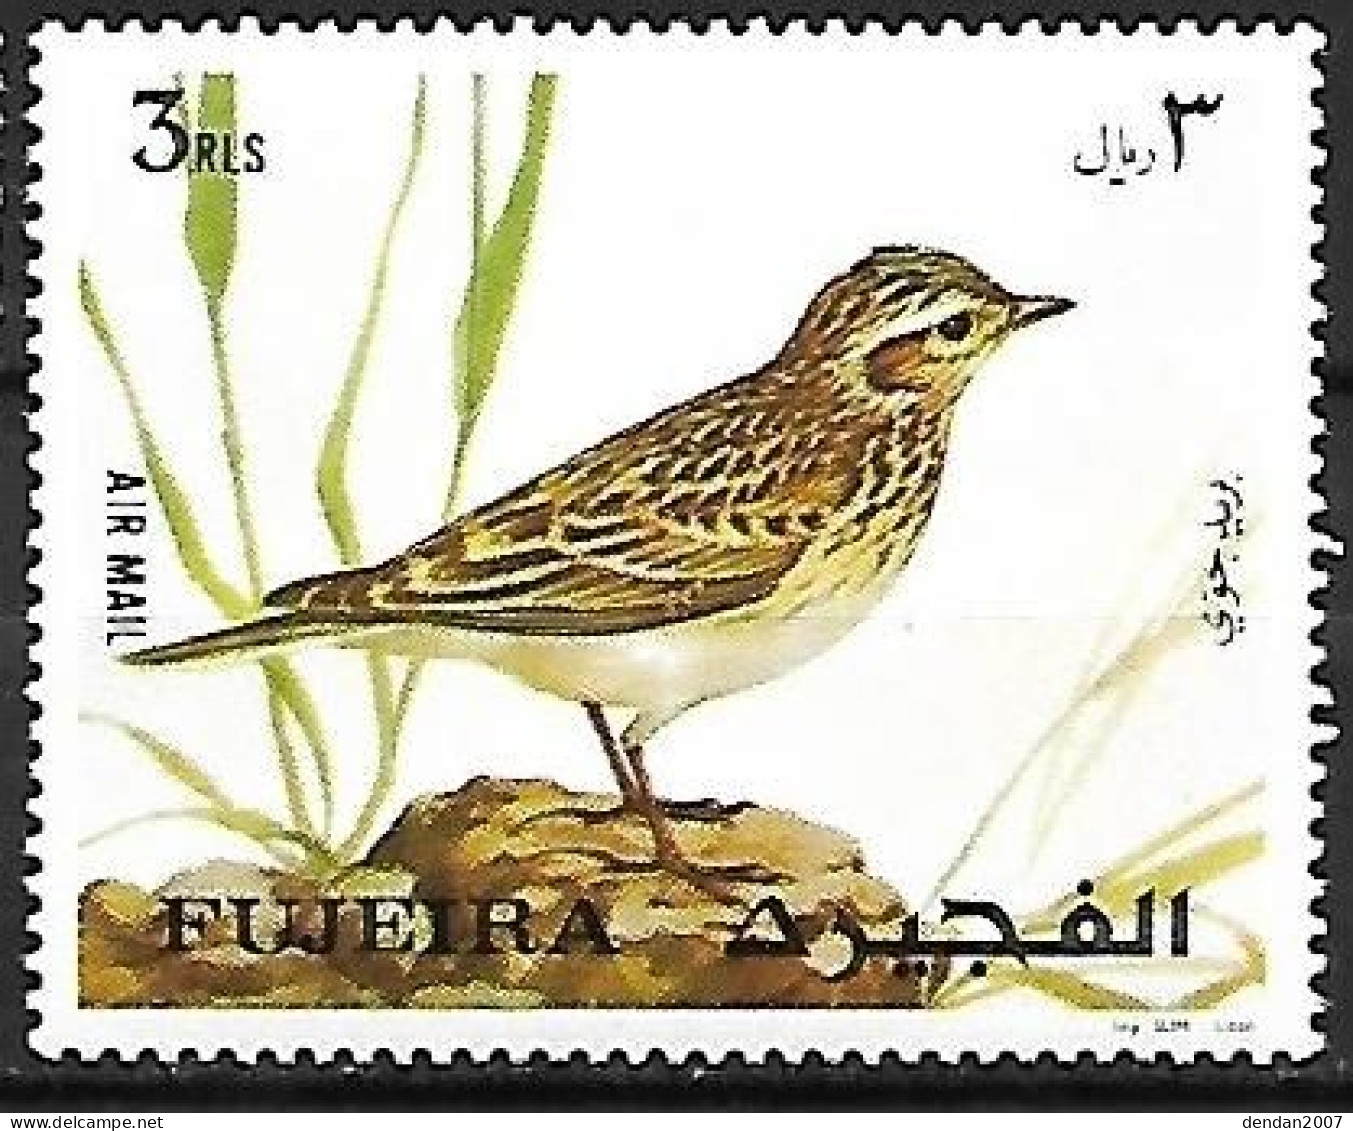 Fujeira - MNH ** 1972 :    Eurasian Skylark  -  Alauda Arvensis - Pájaros Cantores (Passeri)